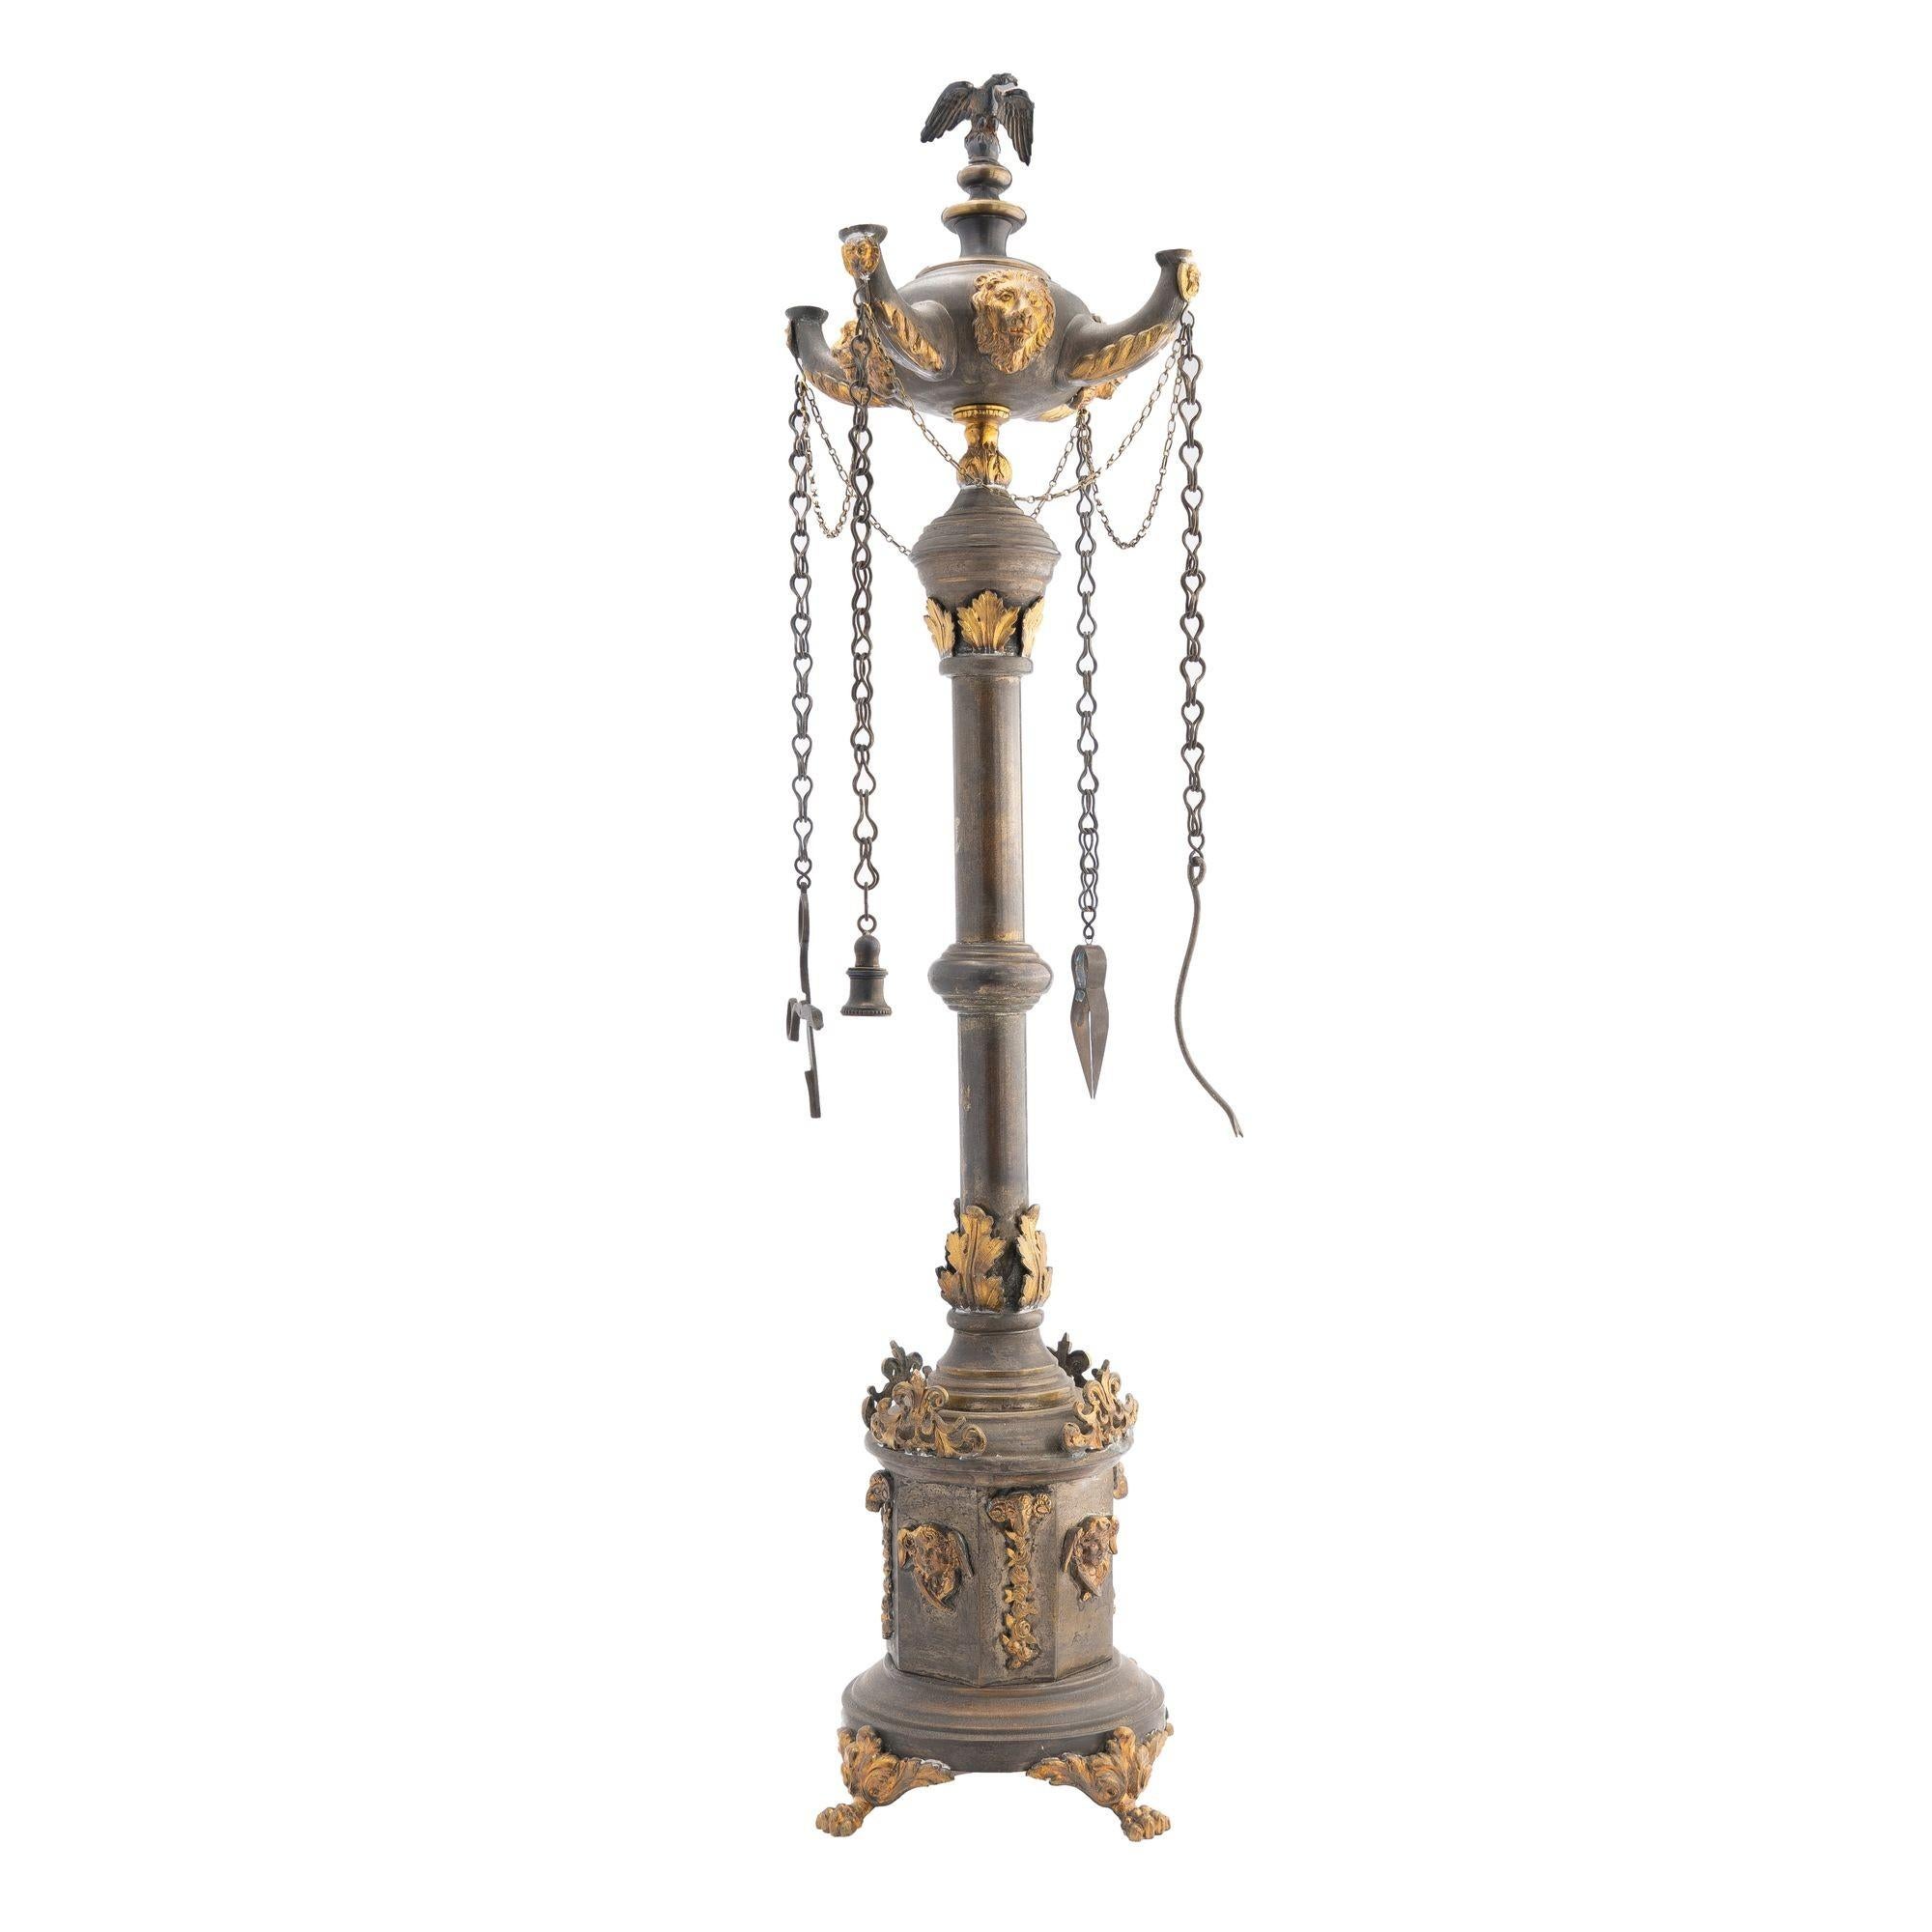 Lampe Lucerne à colonne en laiton moulé et estampillé avec des embellissements oxydés et dorés contrastés. La lampe est conçue d'après un monument romain à colonnes. Elle est montée d'un bénitier à quatre becs avec un couvercle portant un aigle et